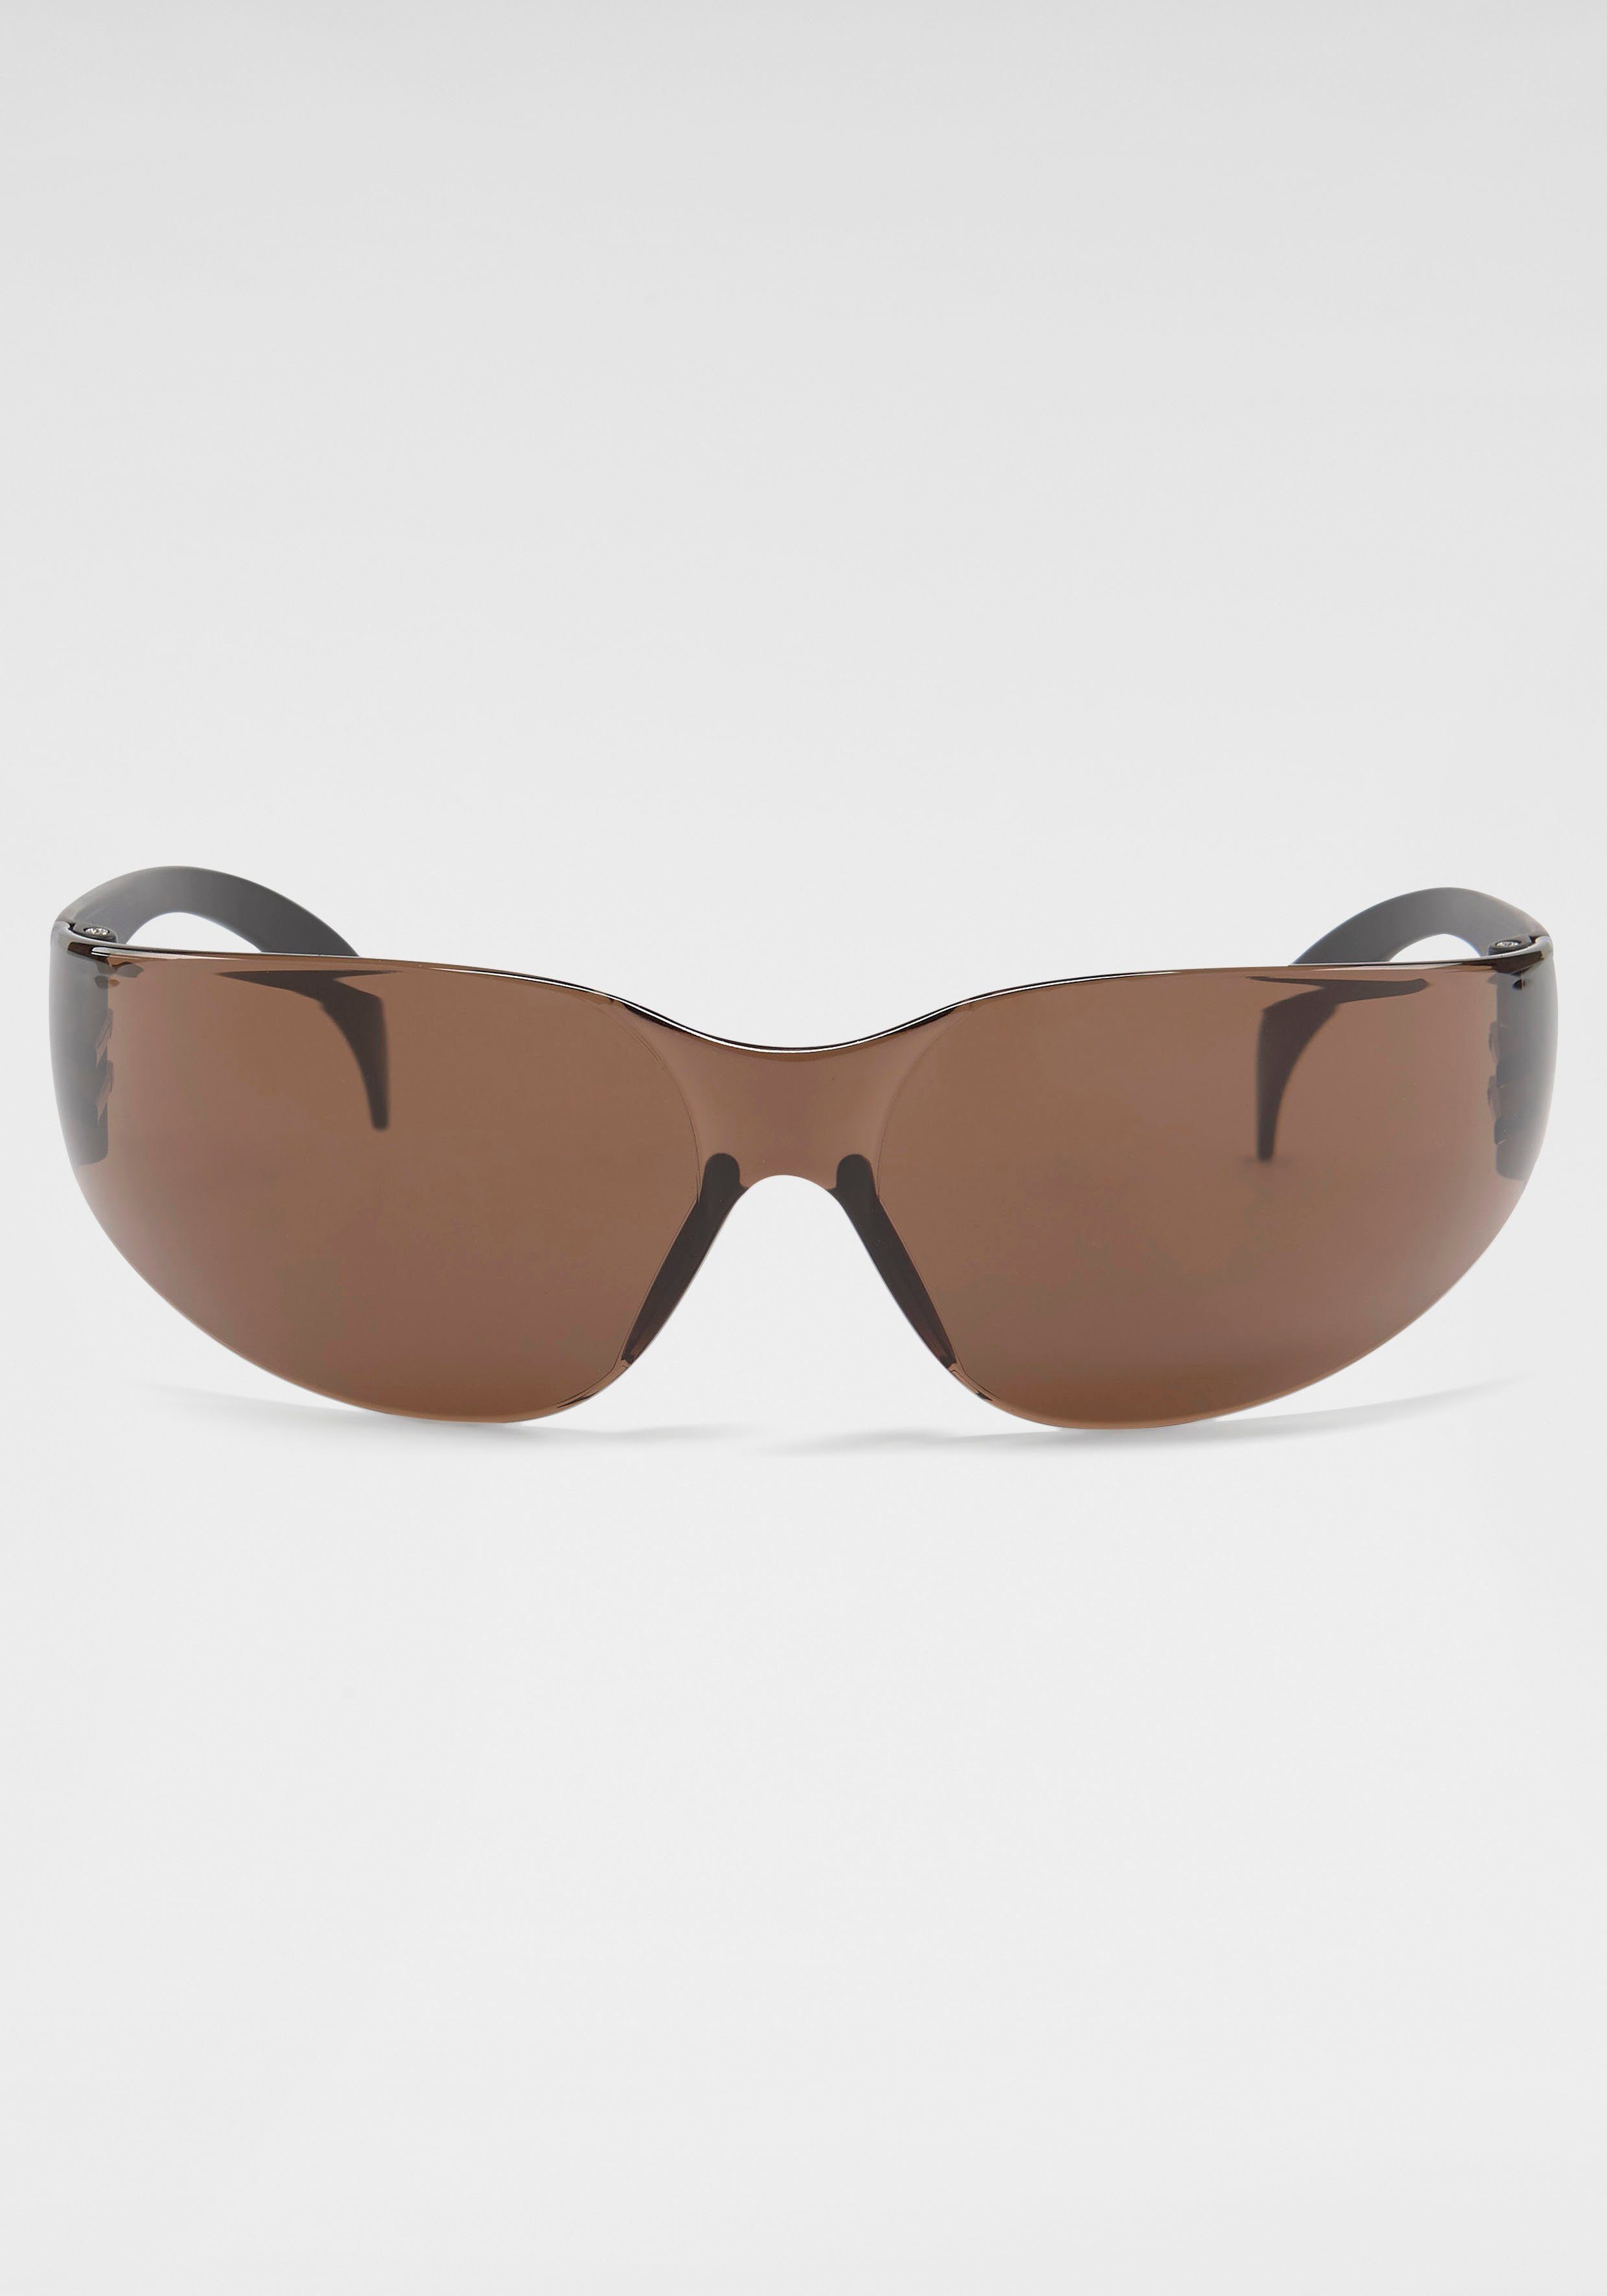 BACK IN BLACK Eyewear Sonnenbrille Randlos braun | Sonnenbrillen